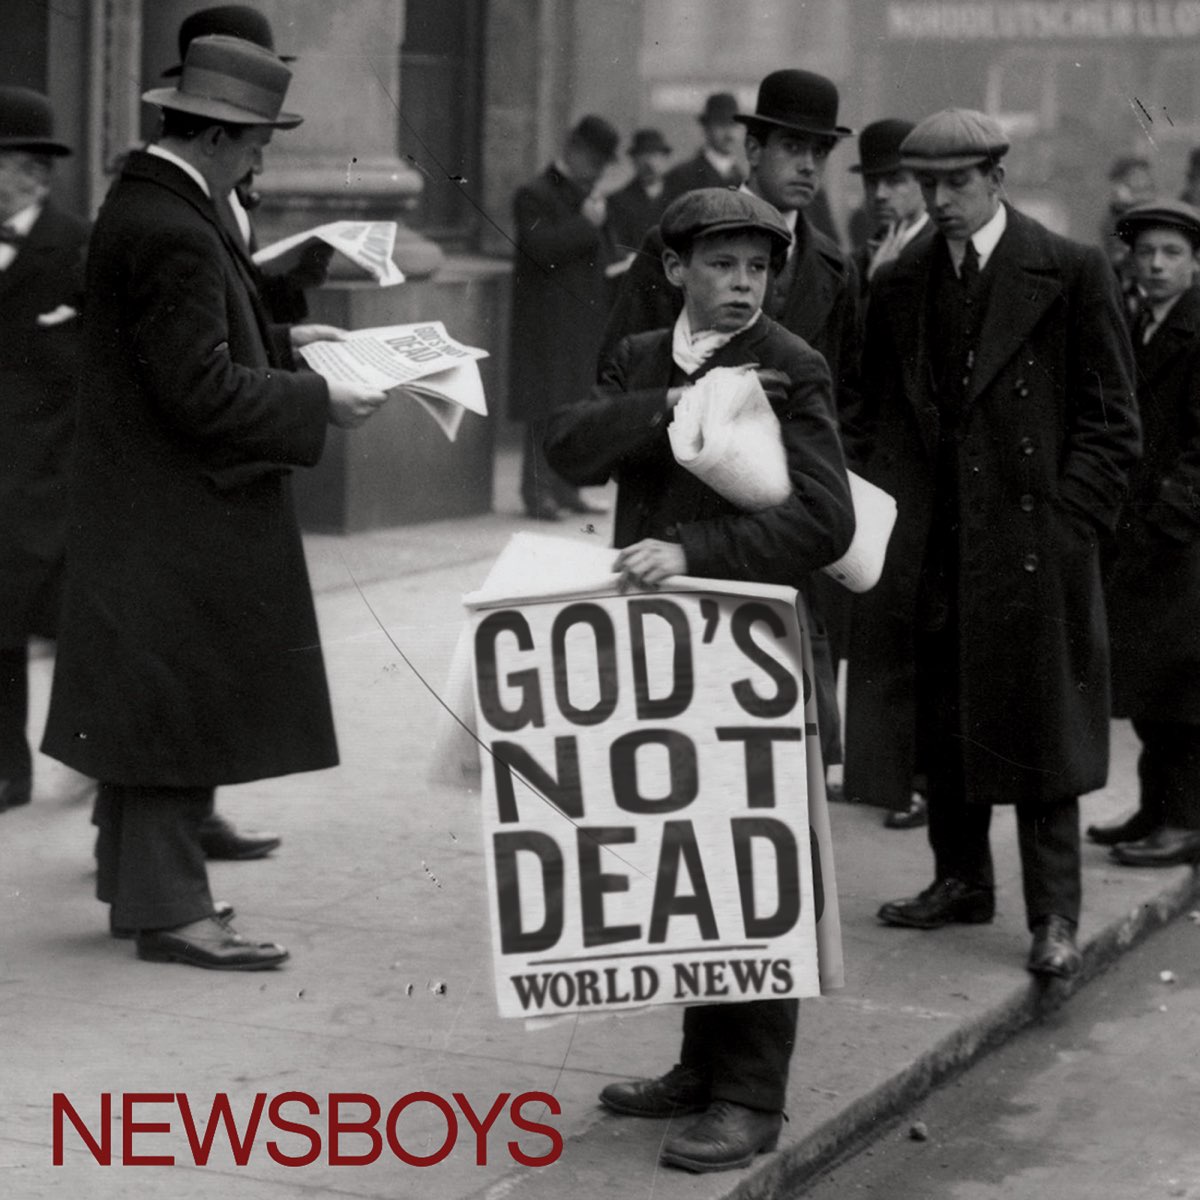 God Dont Hear Dead Men - Single - Album by xanaji & MDPOPE - Apple